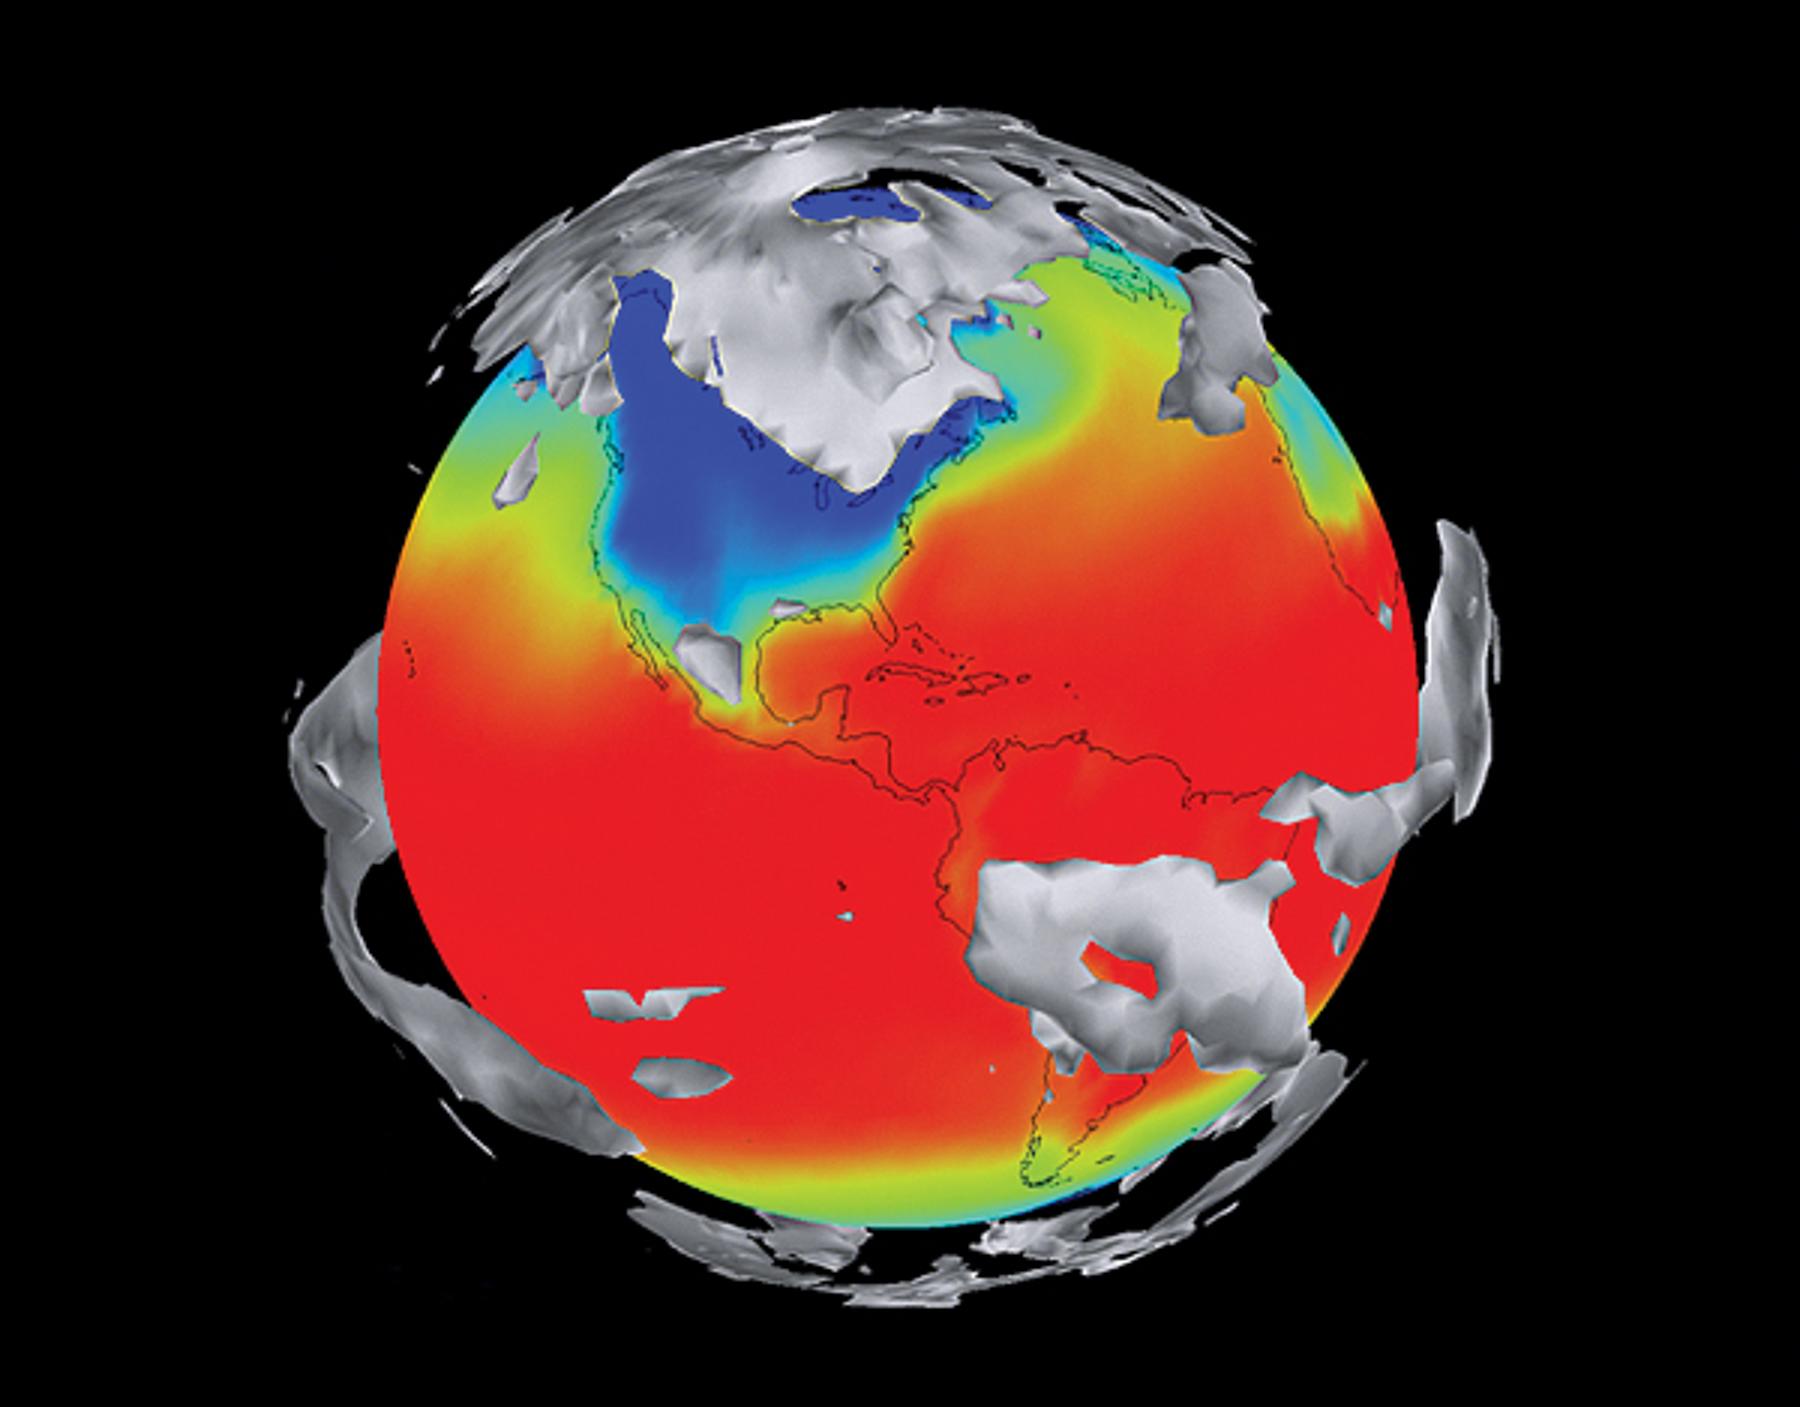 Los científicos usan el Modelo del Sistema Climático Comunitario para aumentar su comprensión de los patrones climáticos del mundo y aprender cómo pueden afectar las regiones alrededor del mundo.